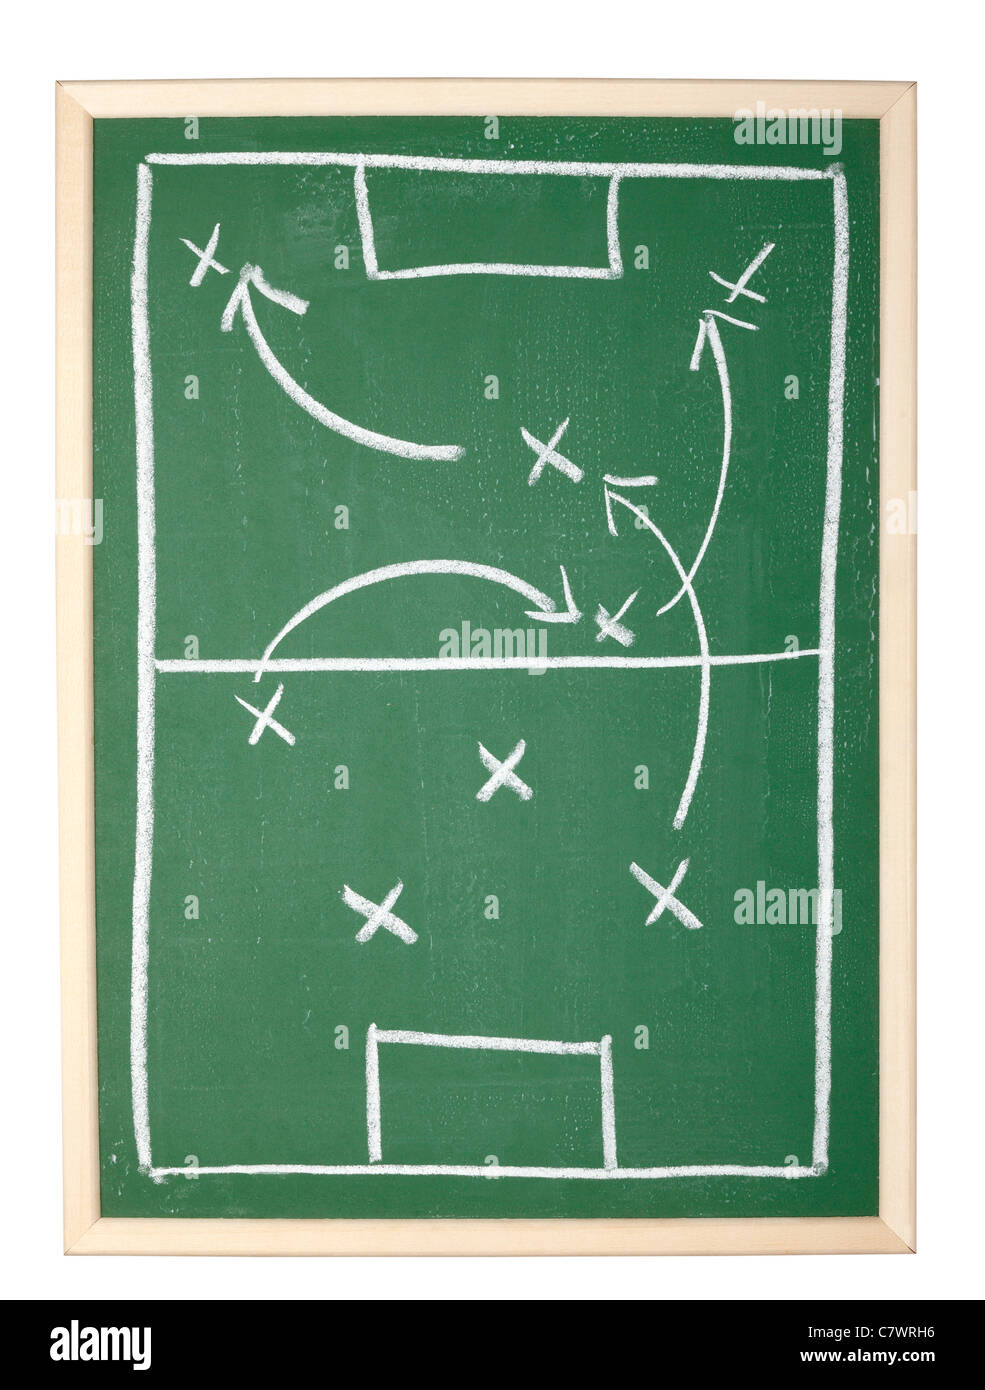 Soccer jeu de dessin sur un tableau noir Banque D'Images